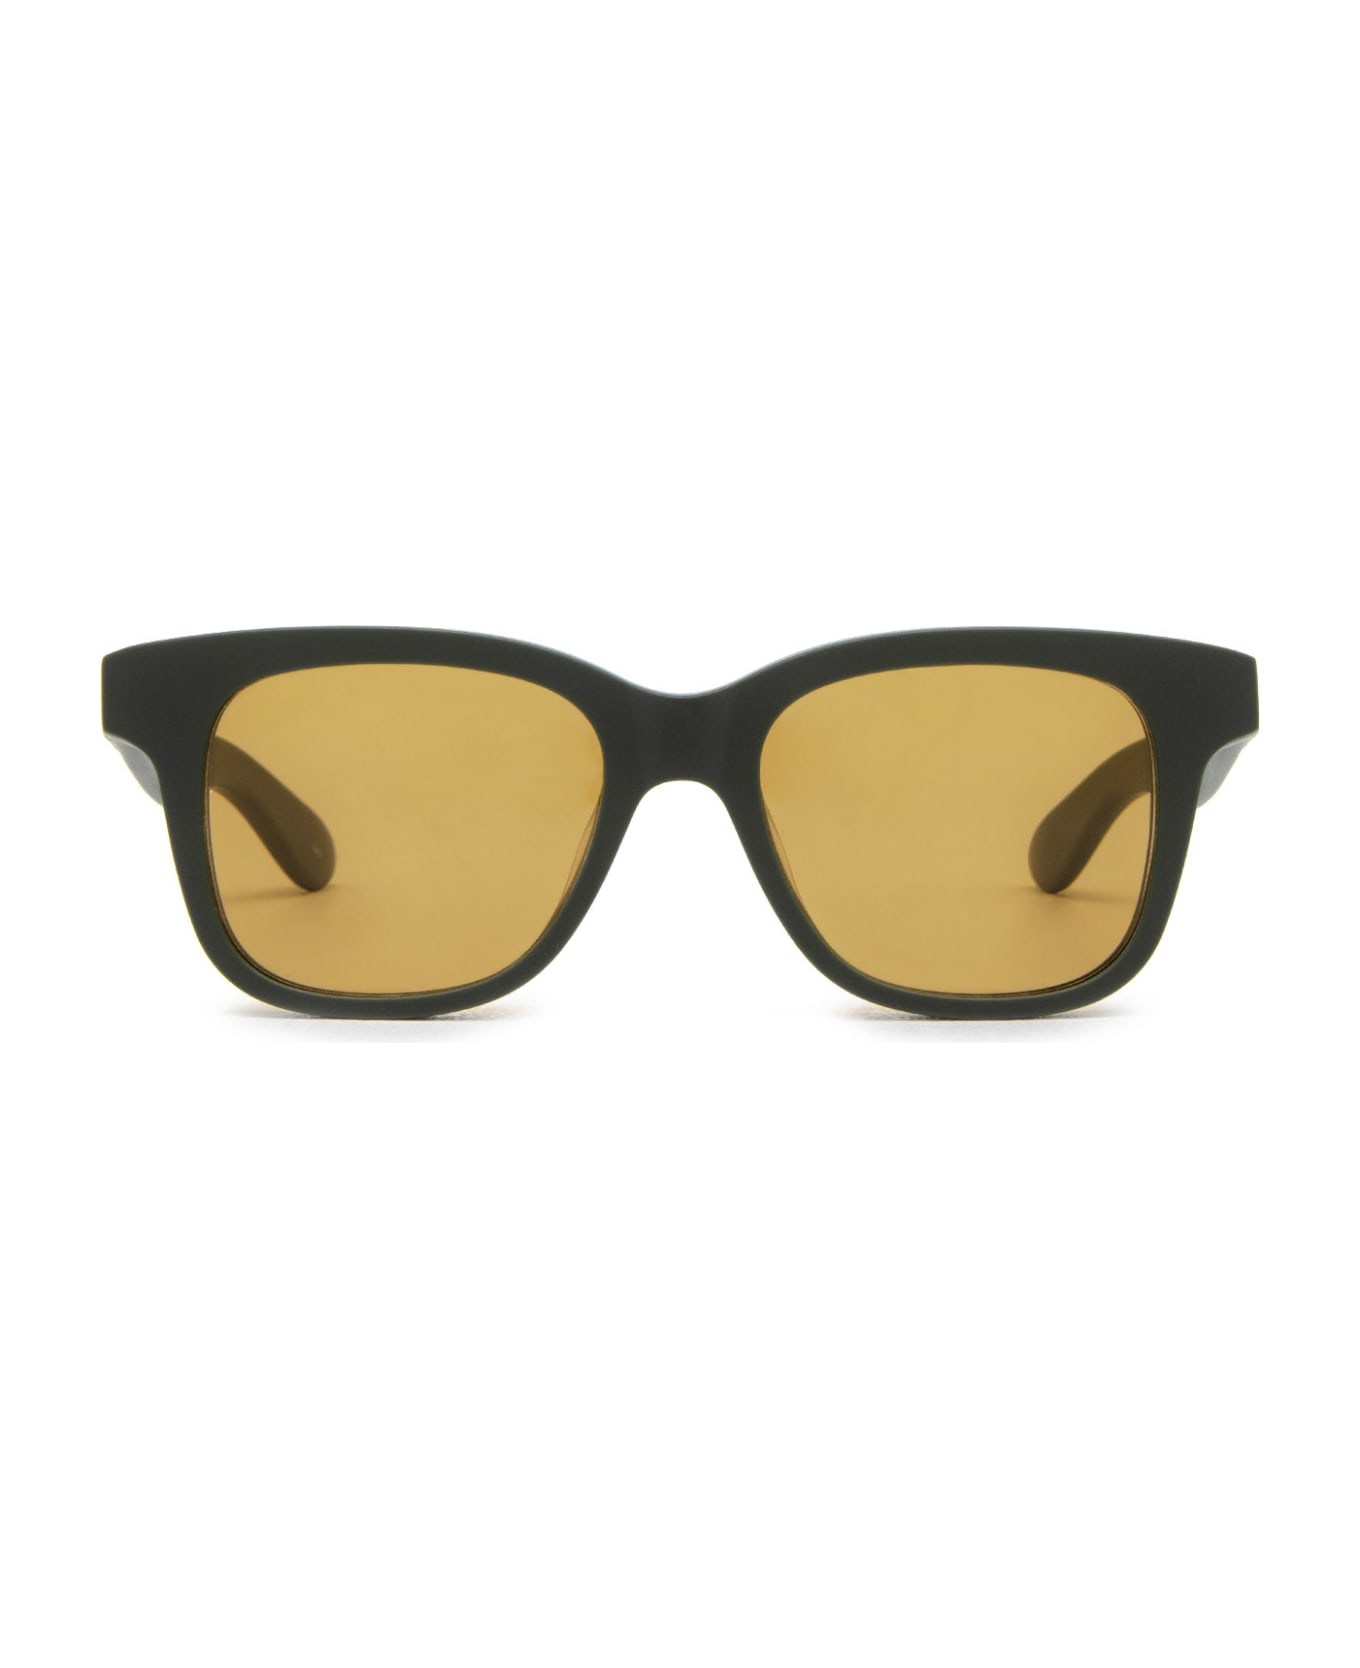 Alexander McQueen Eyewear Am0382s Green Sunglasses - Green